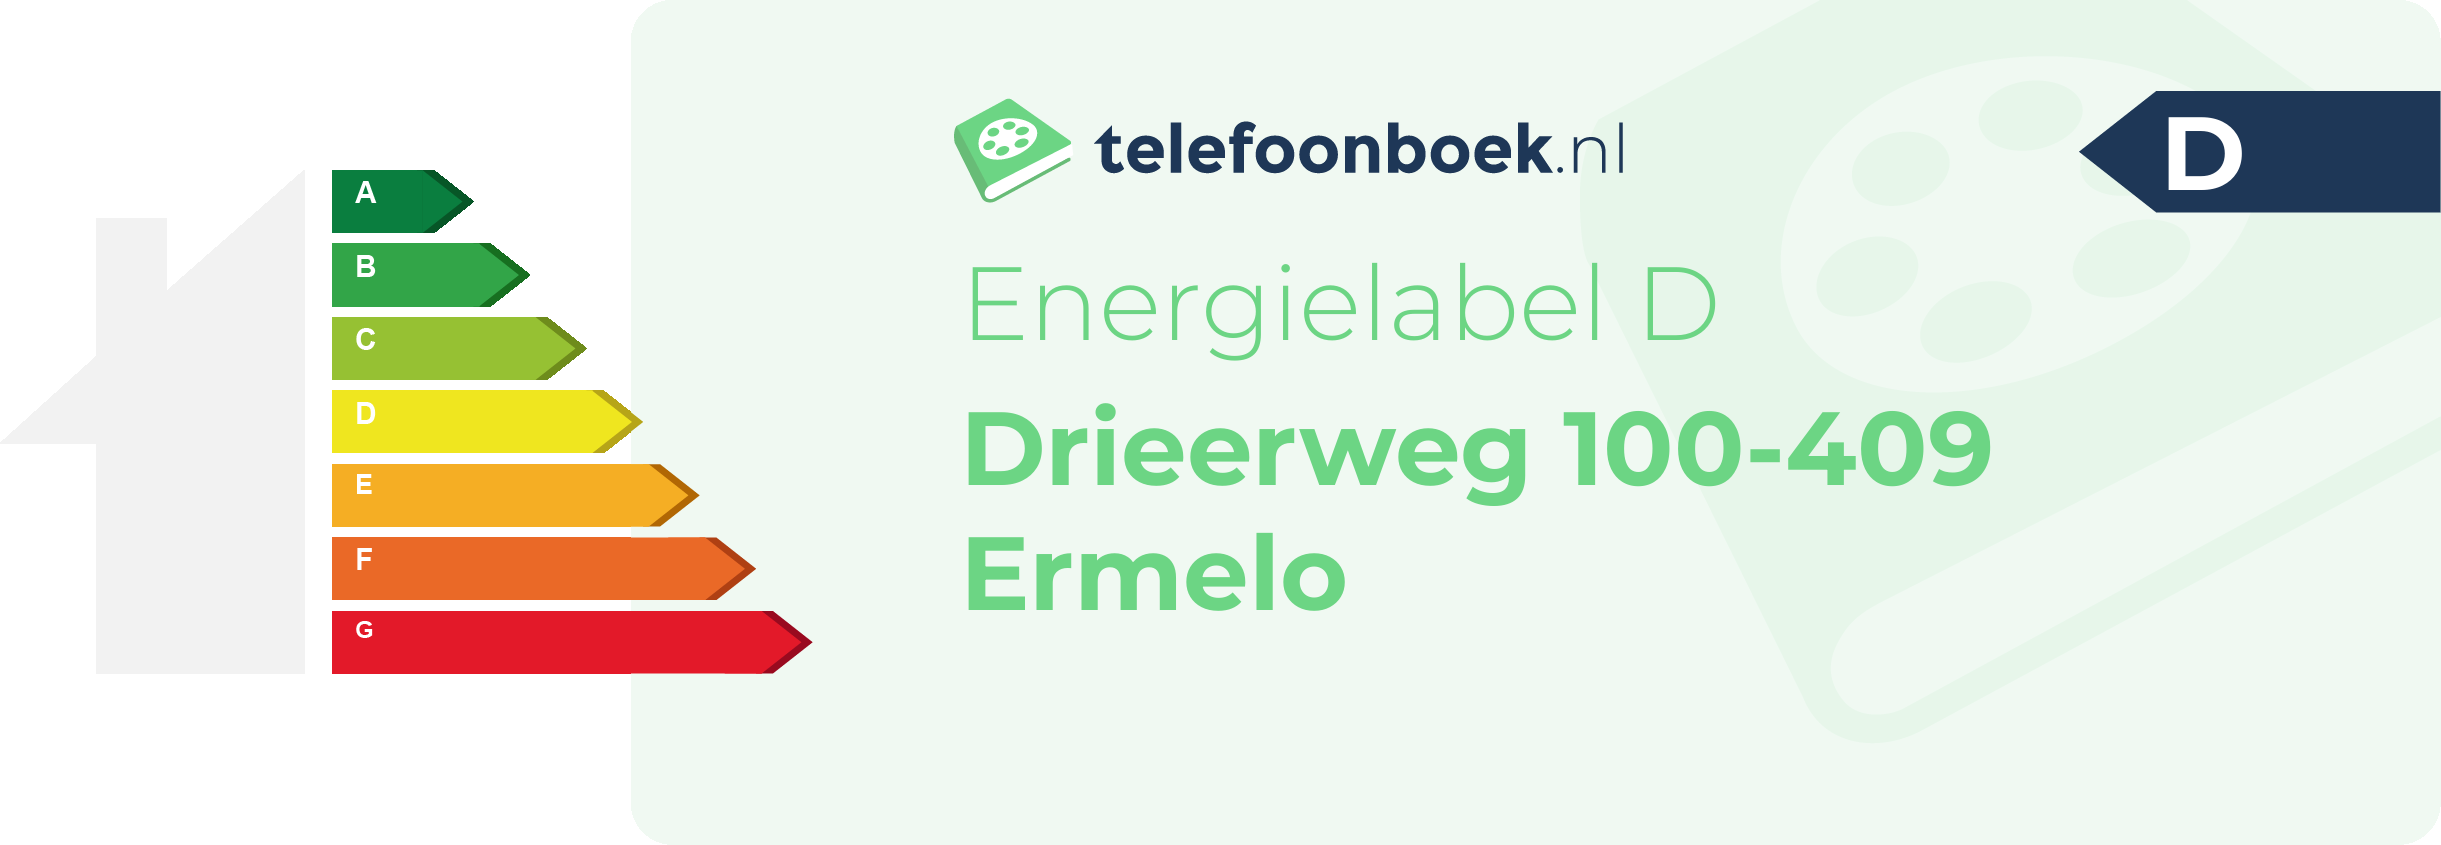 Energielabel Drieerweg 100-409 Ermelo